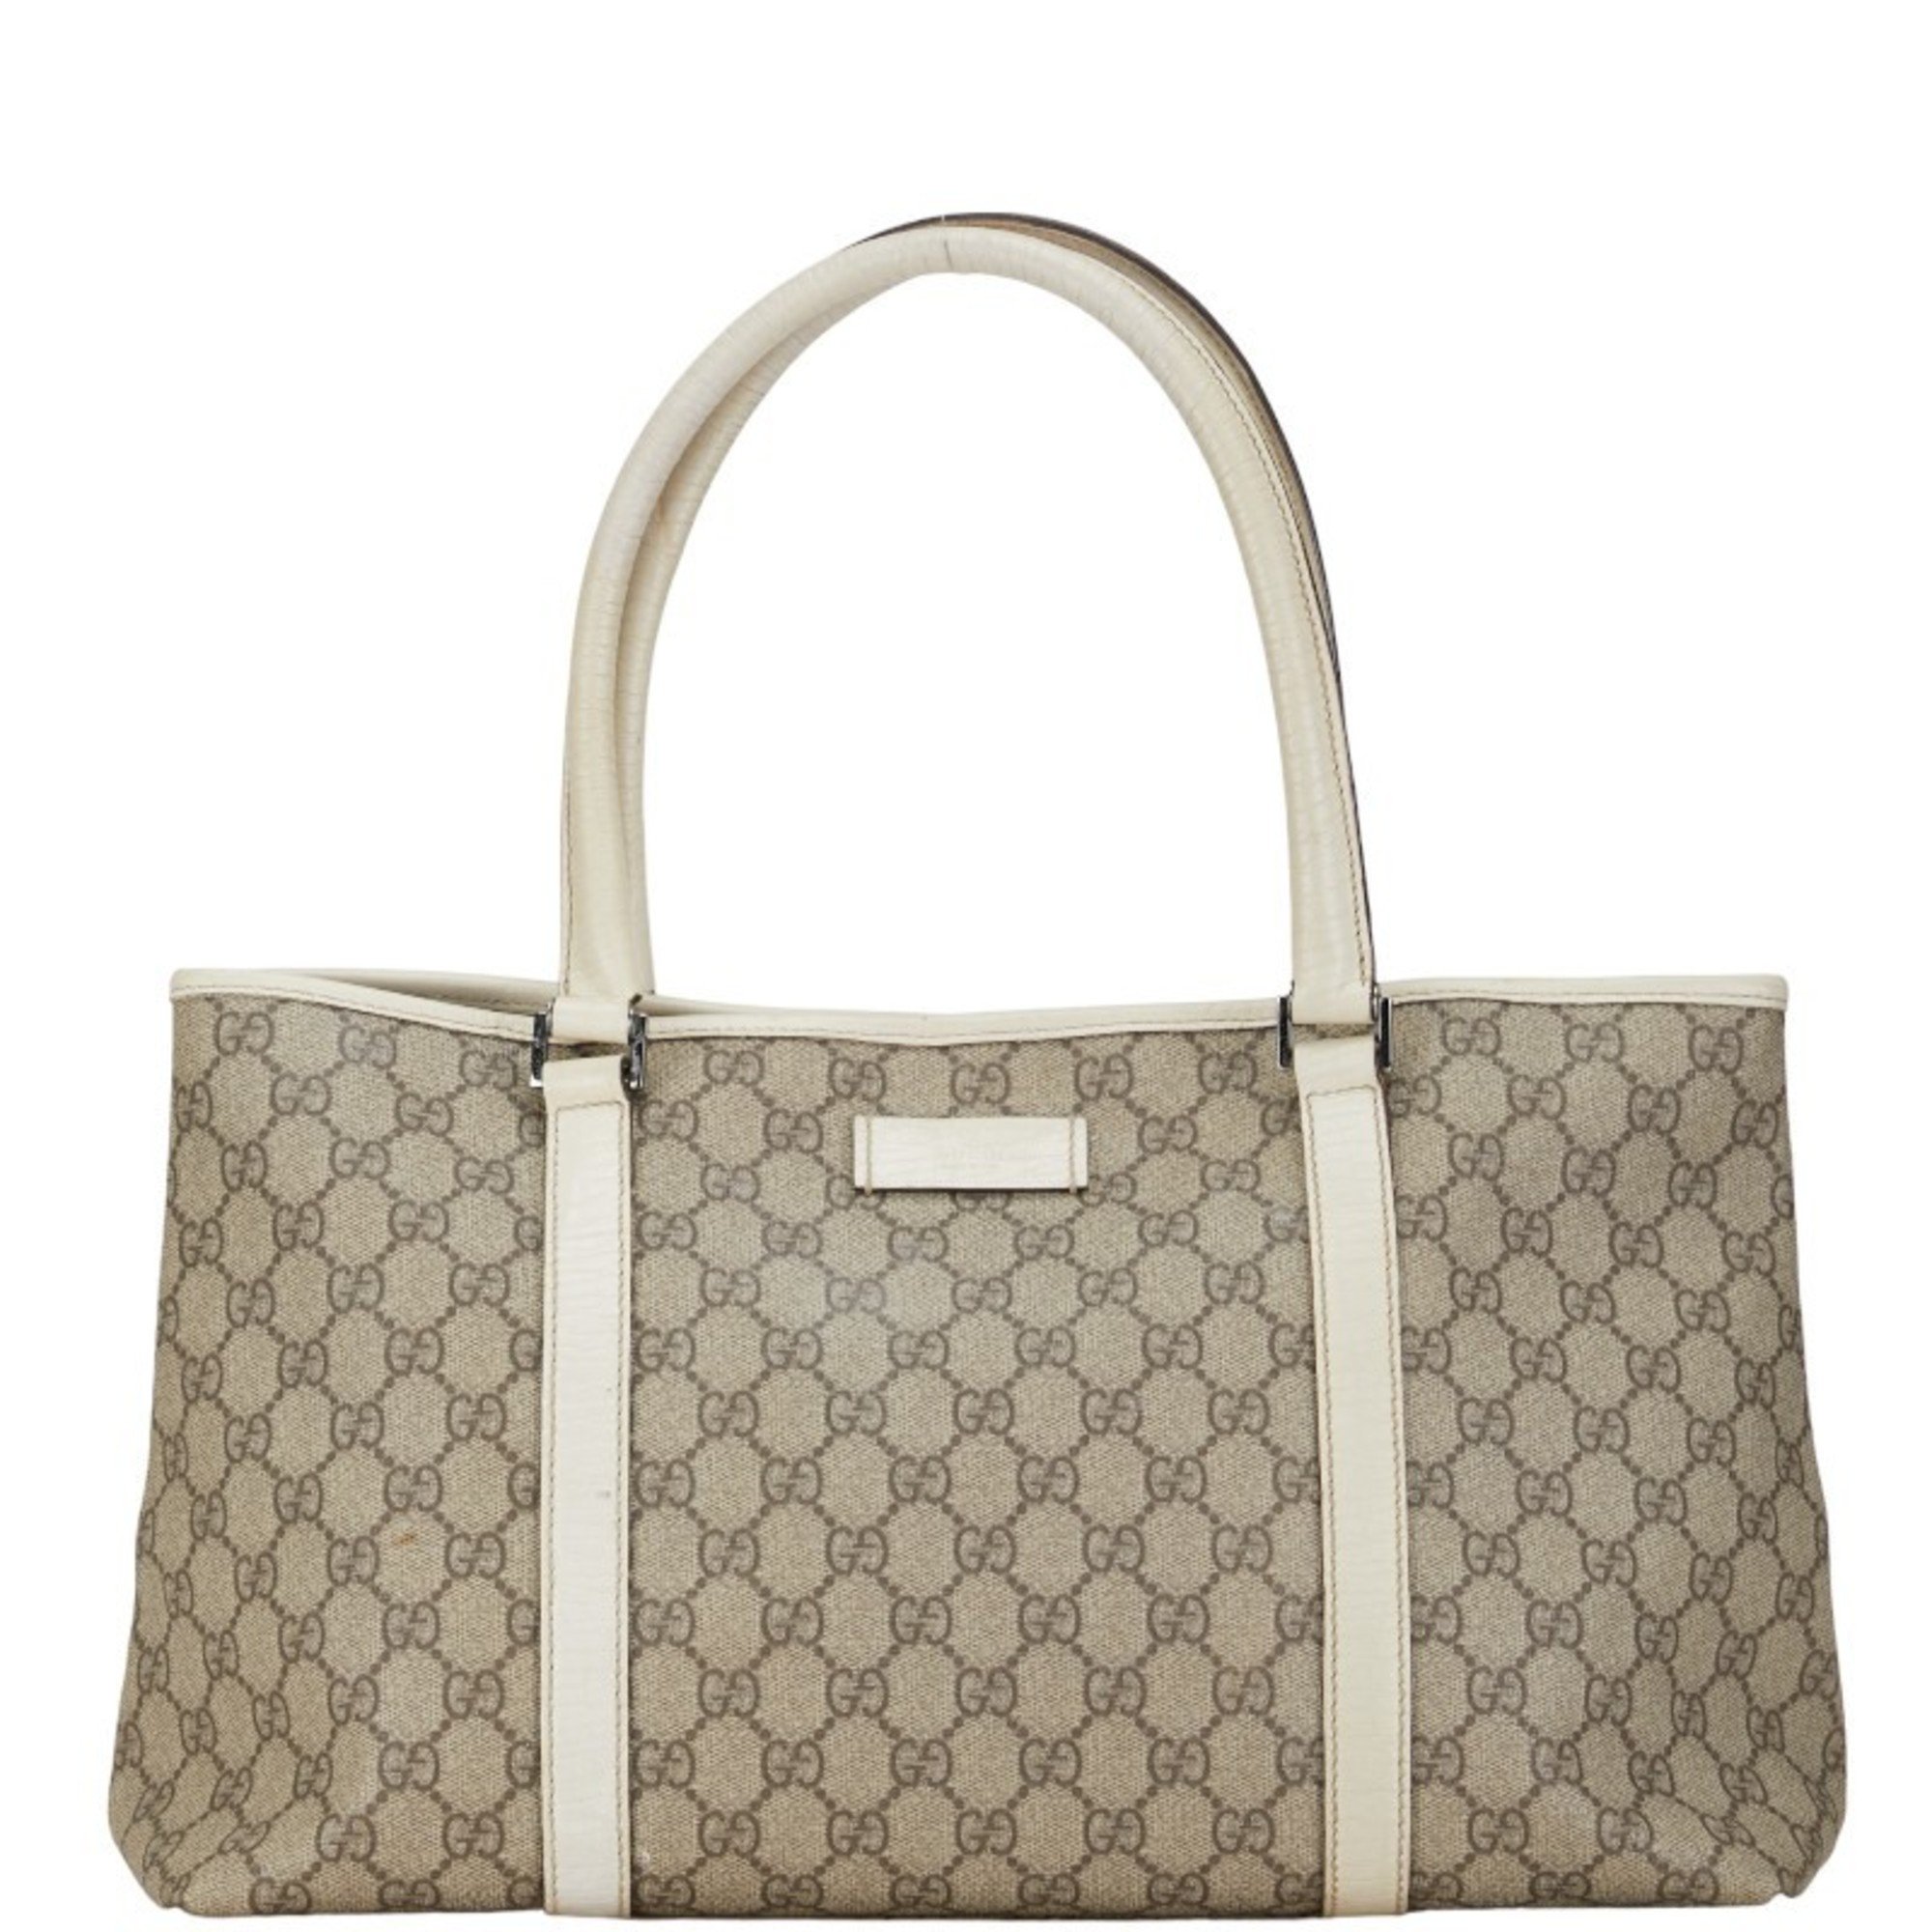 Gucci GG Supreme Handbag Tote Bag 114595 Beige White PVC Leather Women's GUCCI